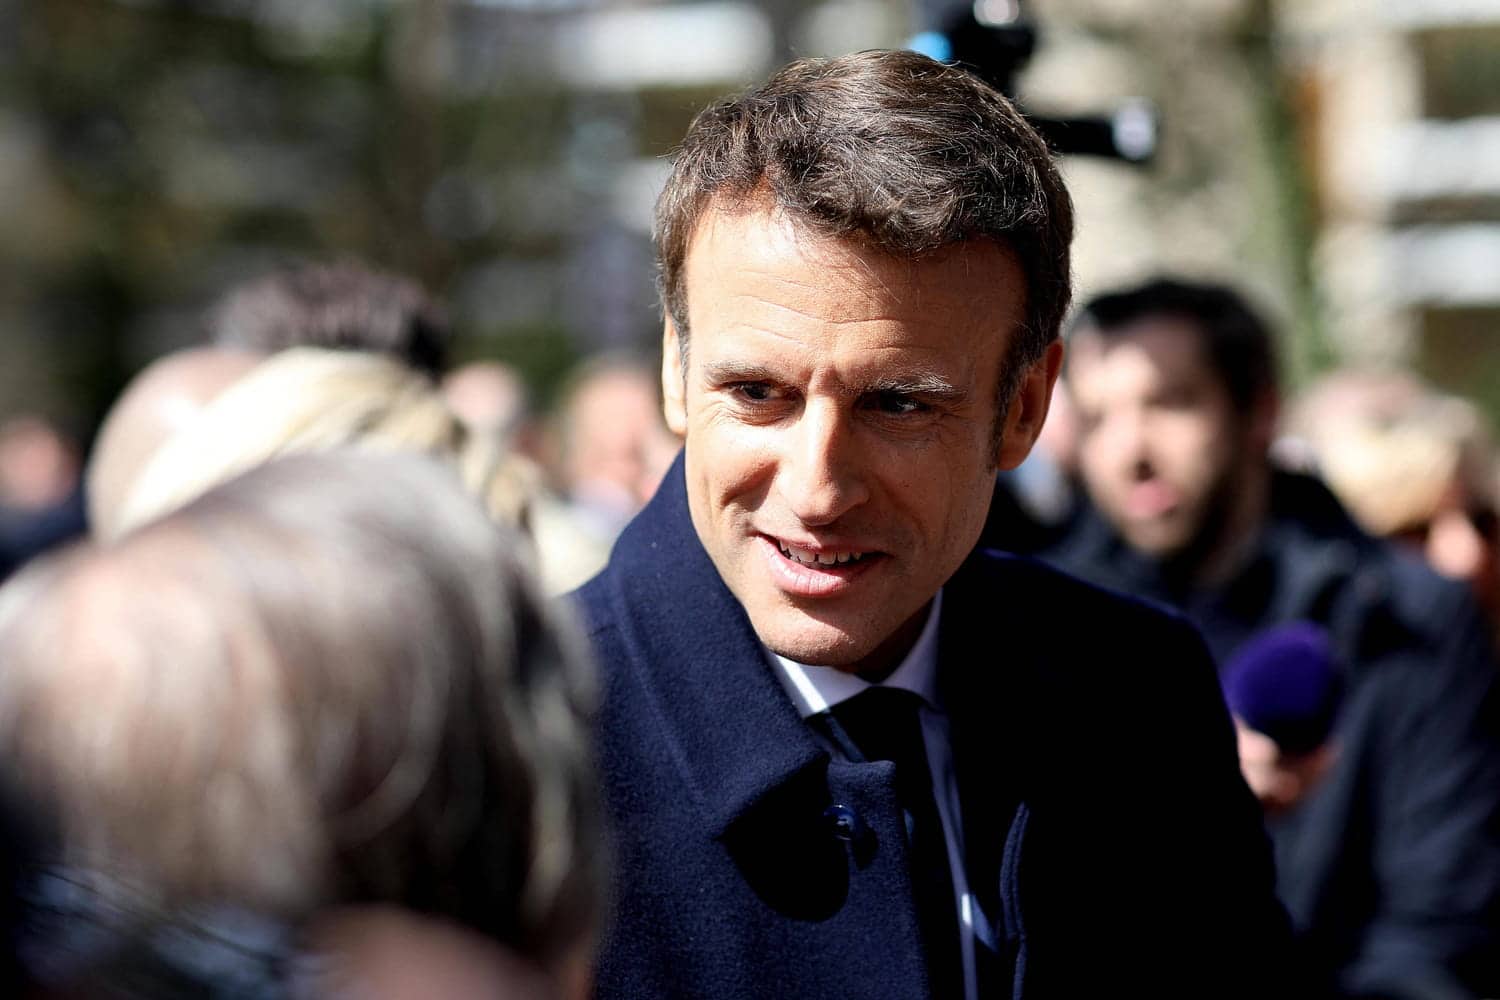 Emmanuel Macron chemise ouverte, torse apparent : les internautes sont surpris